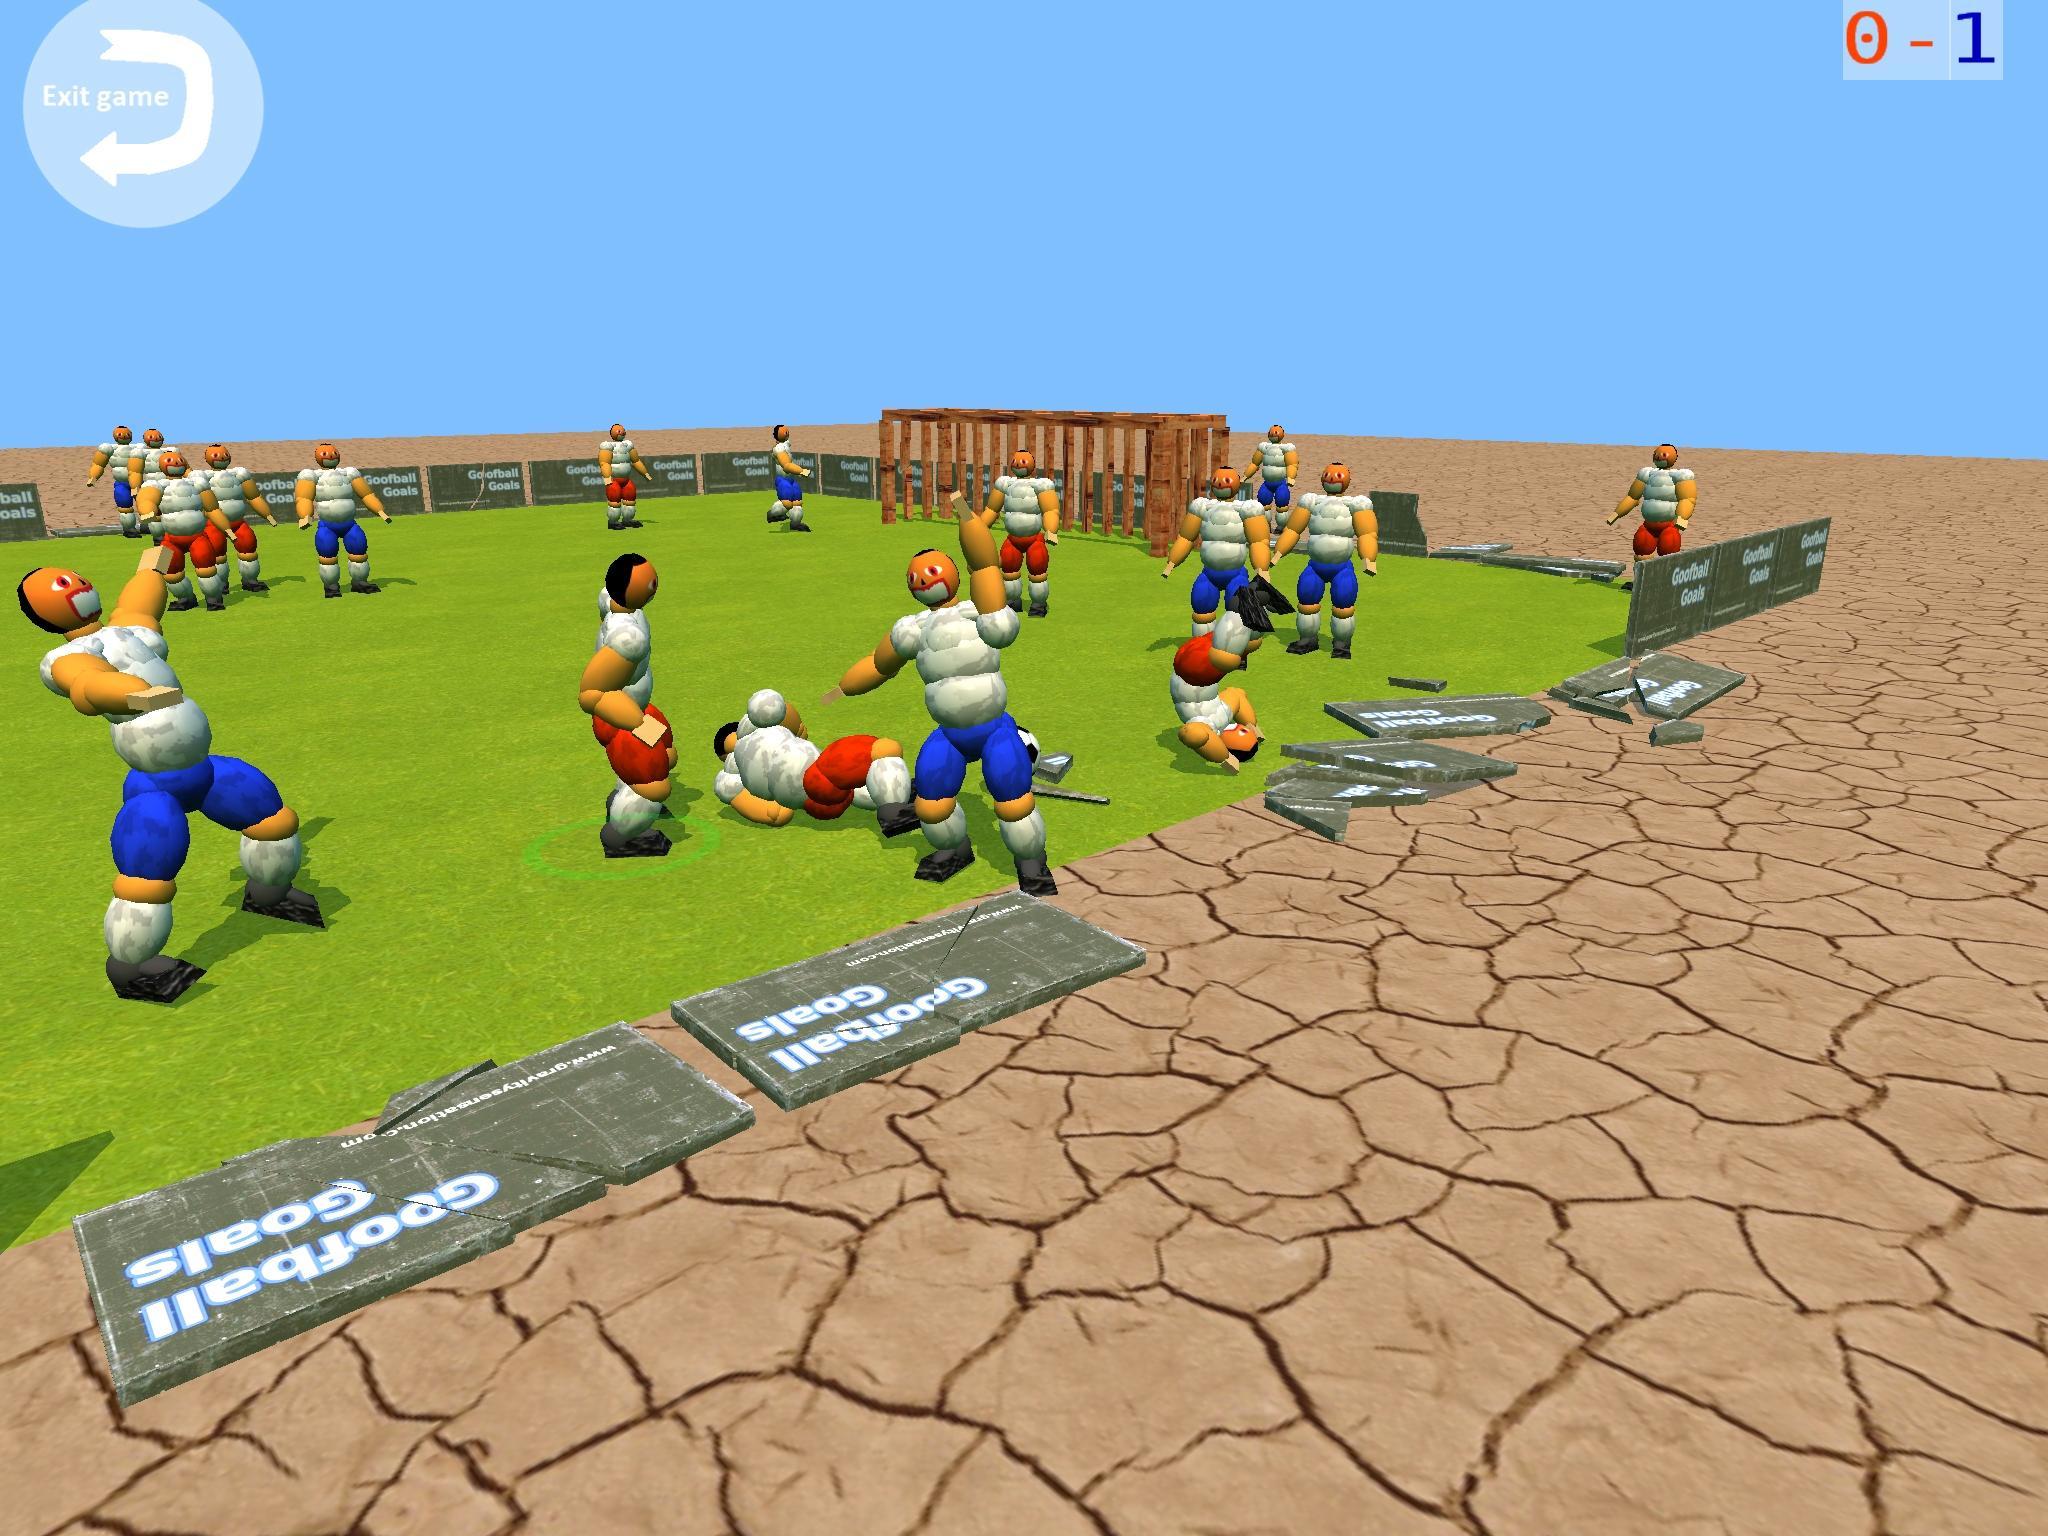 Goofball Goals Soccer Game 3D ภาพหน้าจอเกม